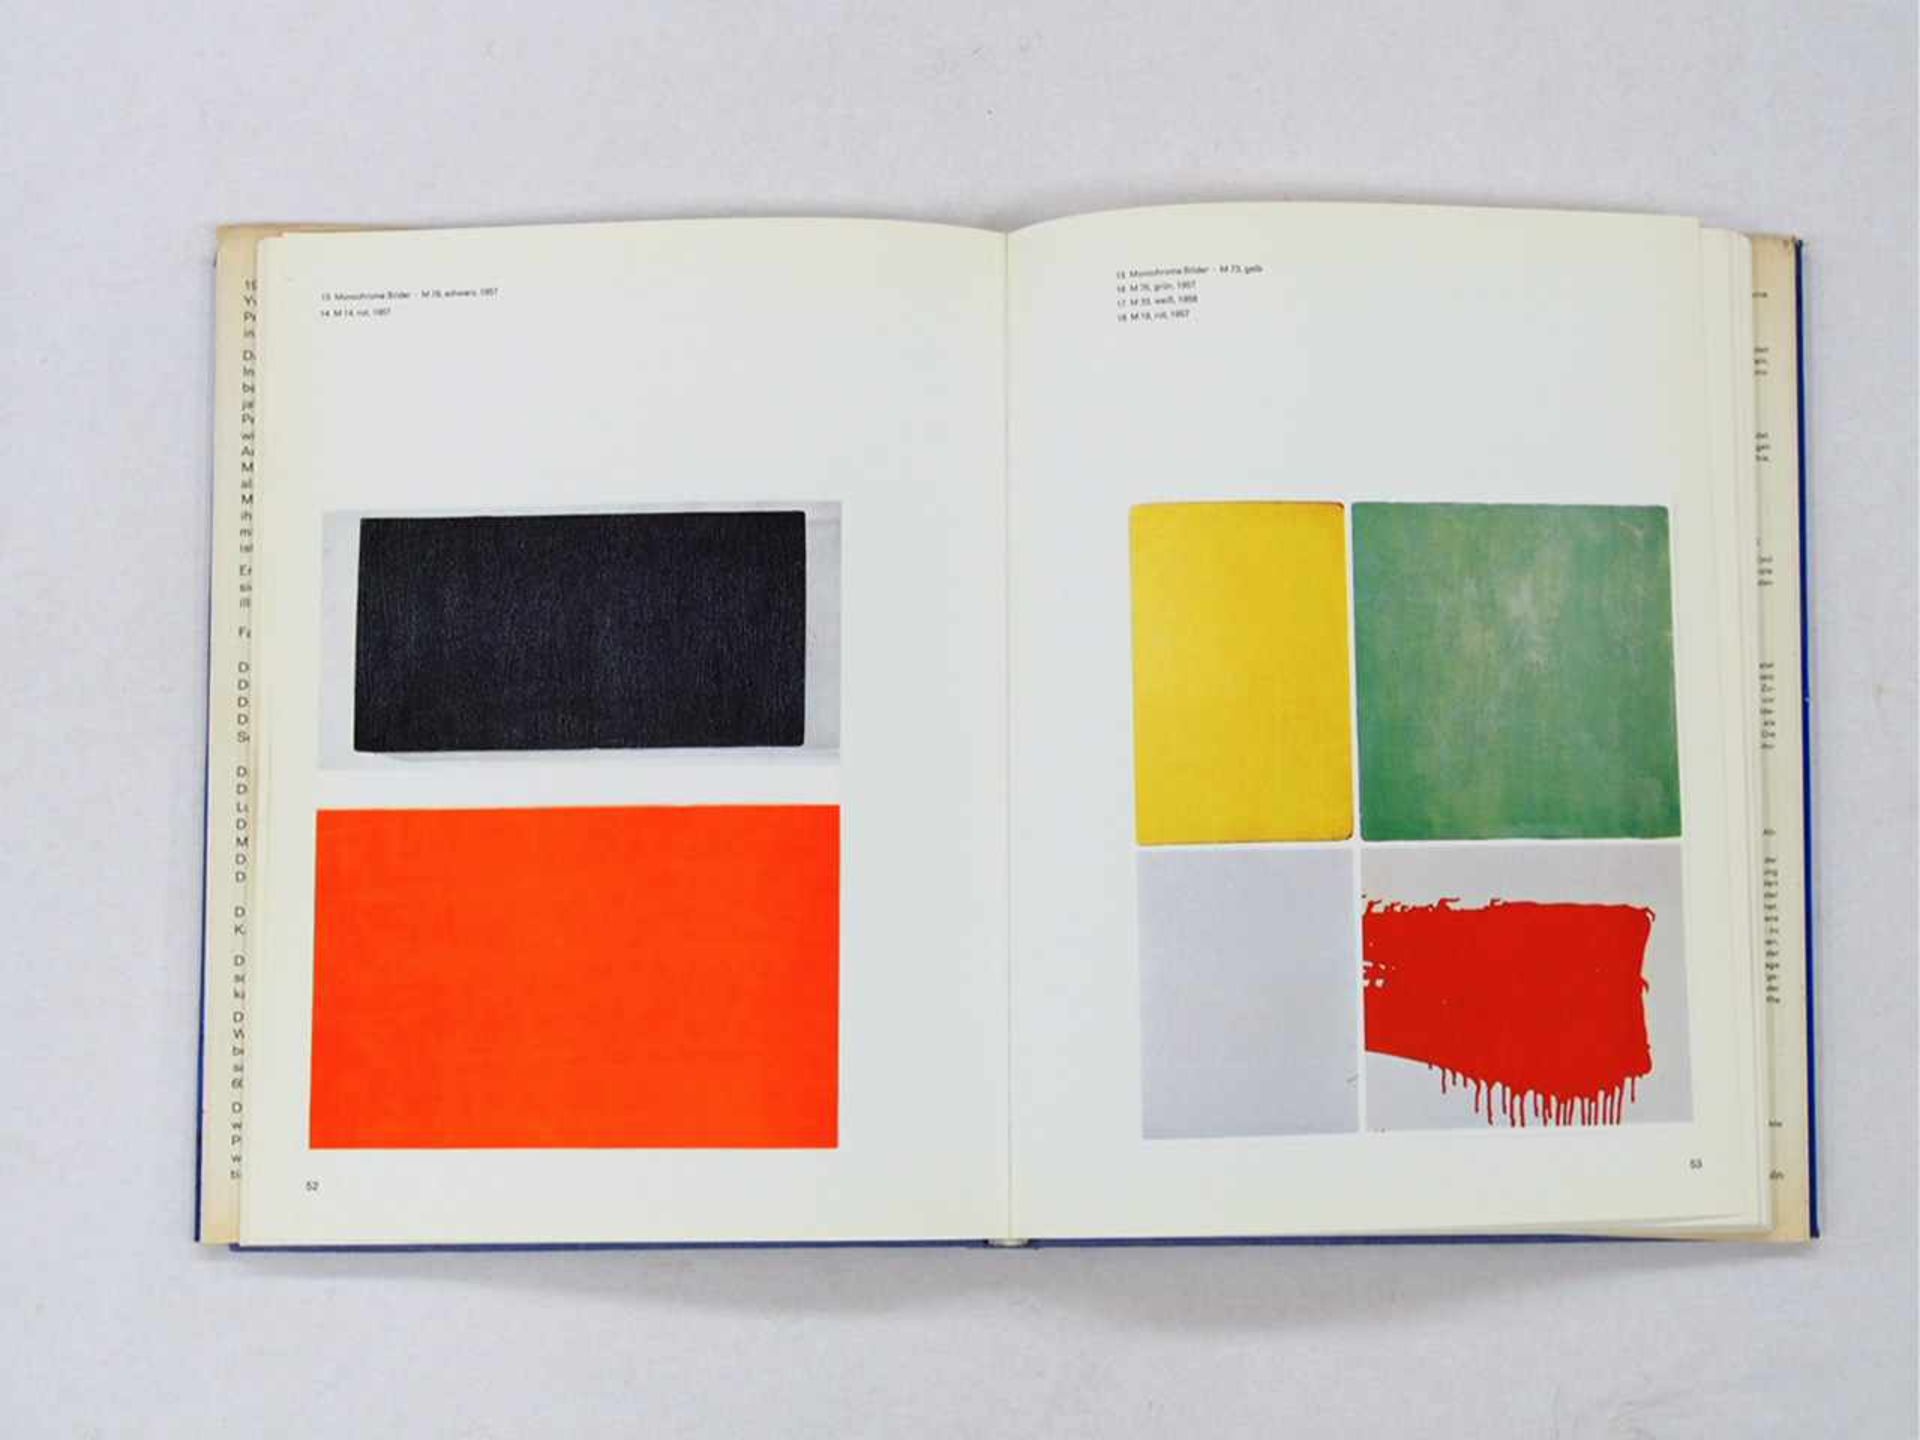 KLEIN, Yves / WEMBER, PaulYves KleinKöln 1969, Institut für moderne Kunst, 33 x 25 cm, eines von - Bild 2 aus 2